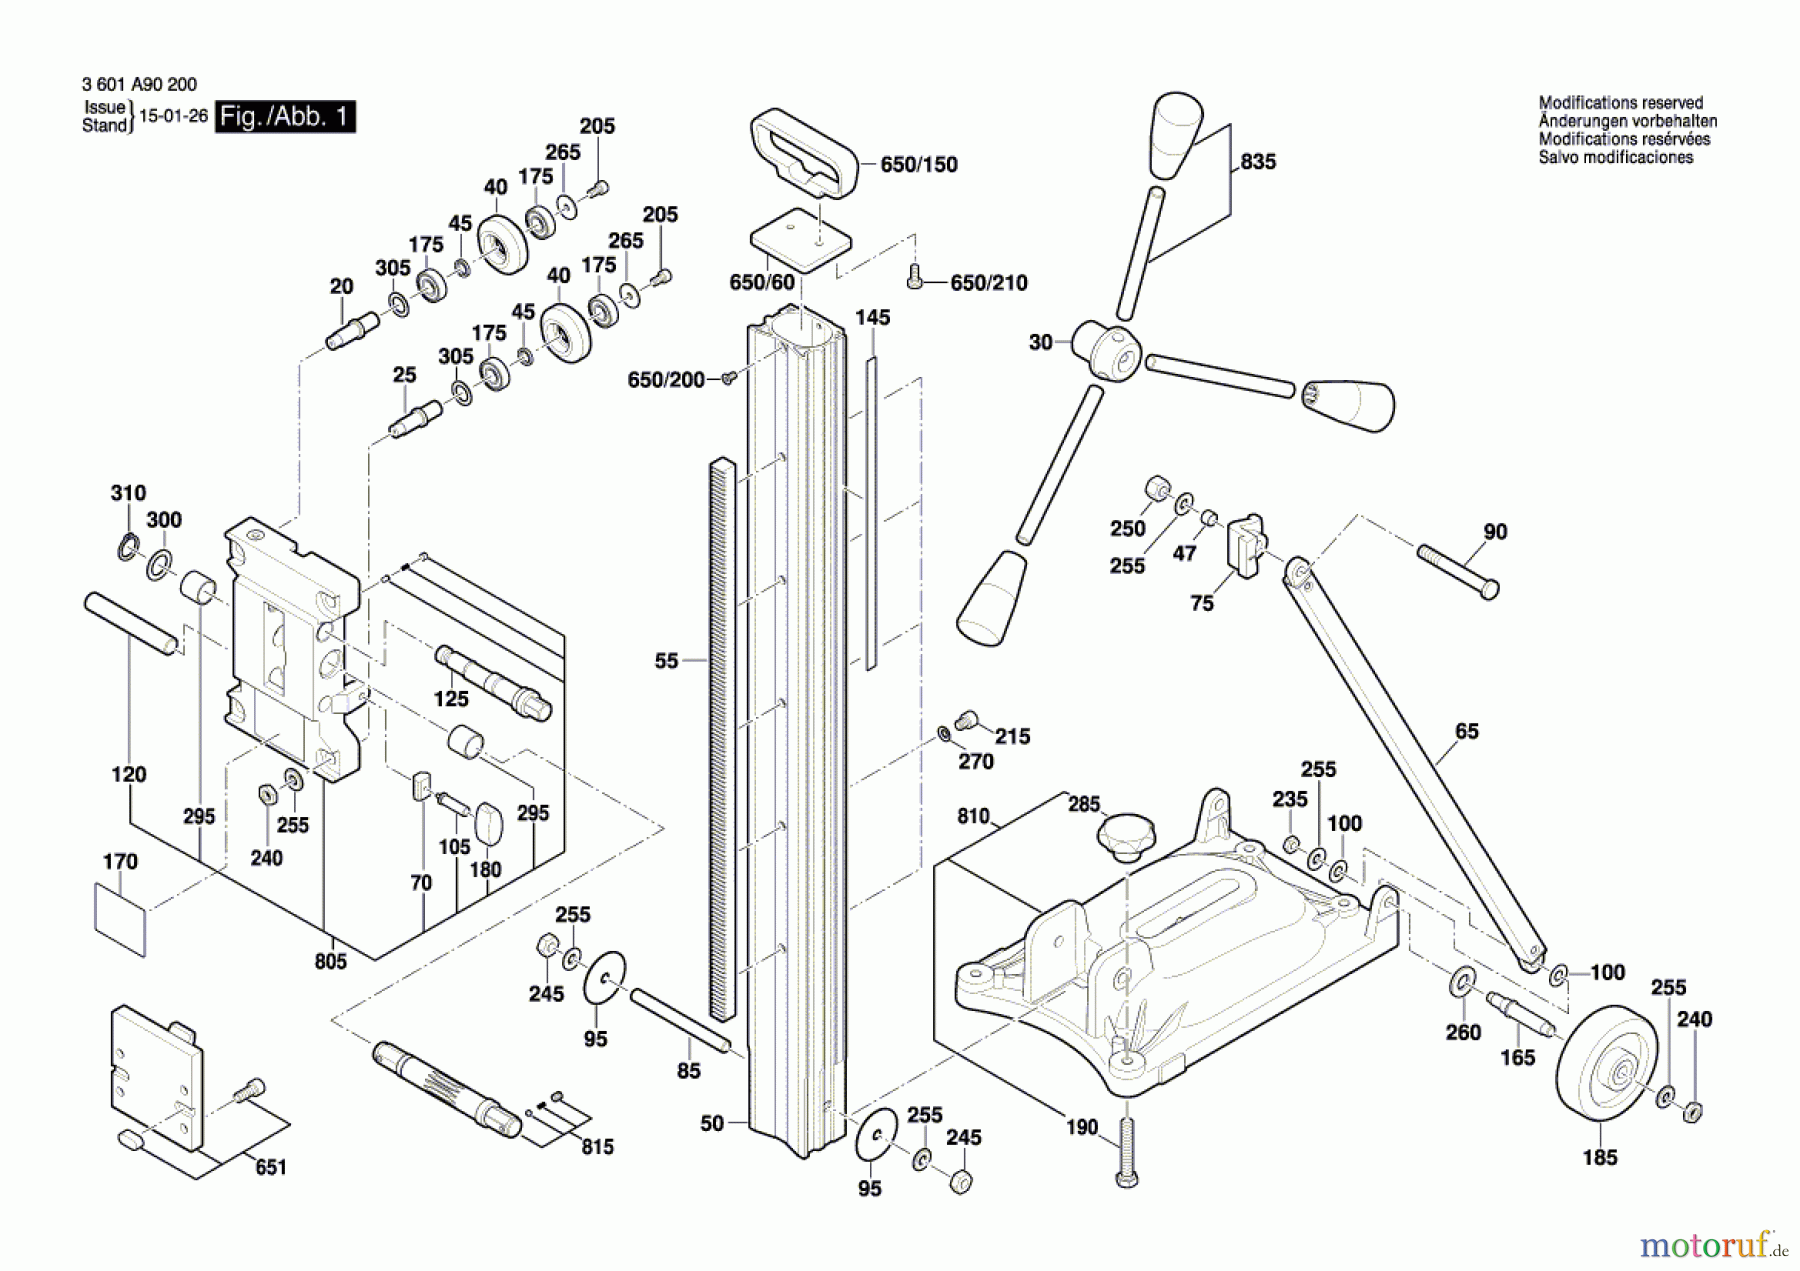  Bosch Werkzeug Bohrständer GCR 350 Seite 1